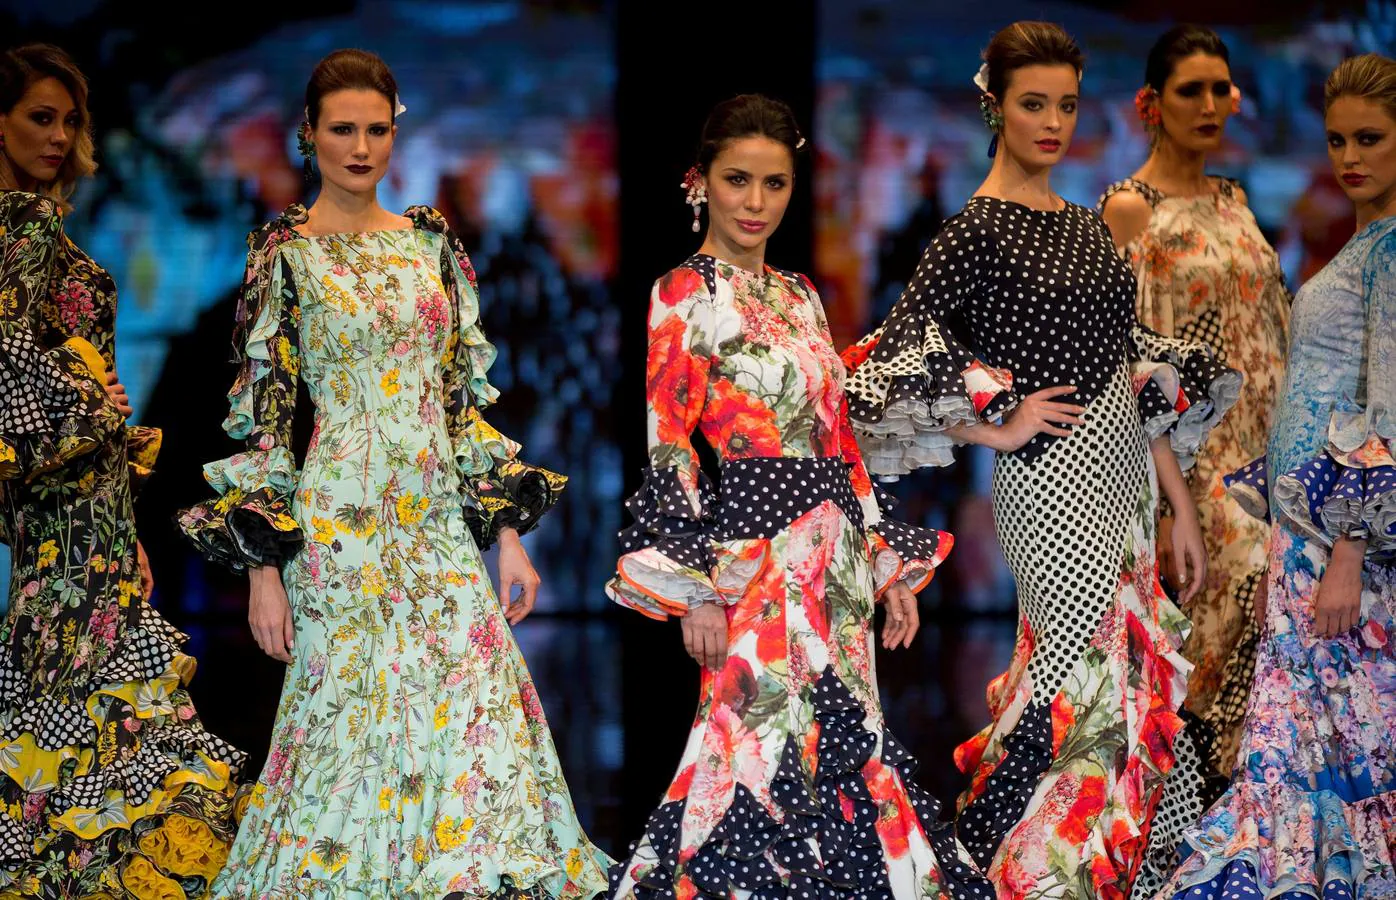 SIMOF 2019: Lina Aurora Gaviño en el Salón Internacional de Moda Flamenca